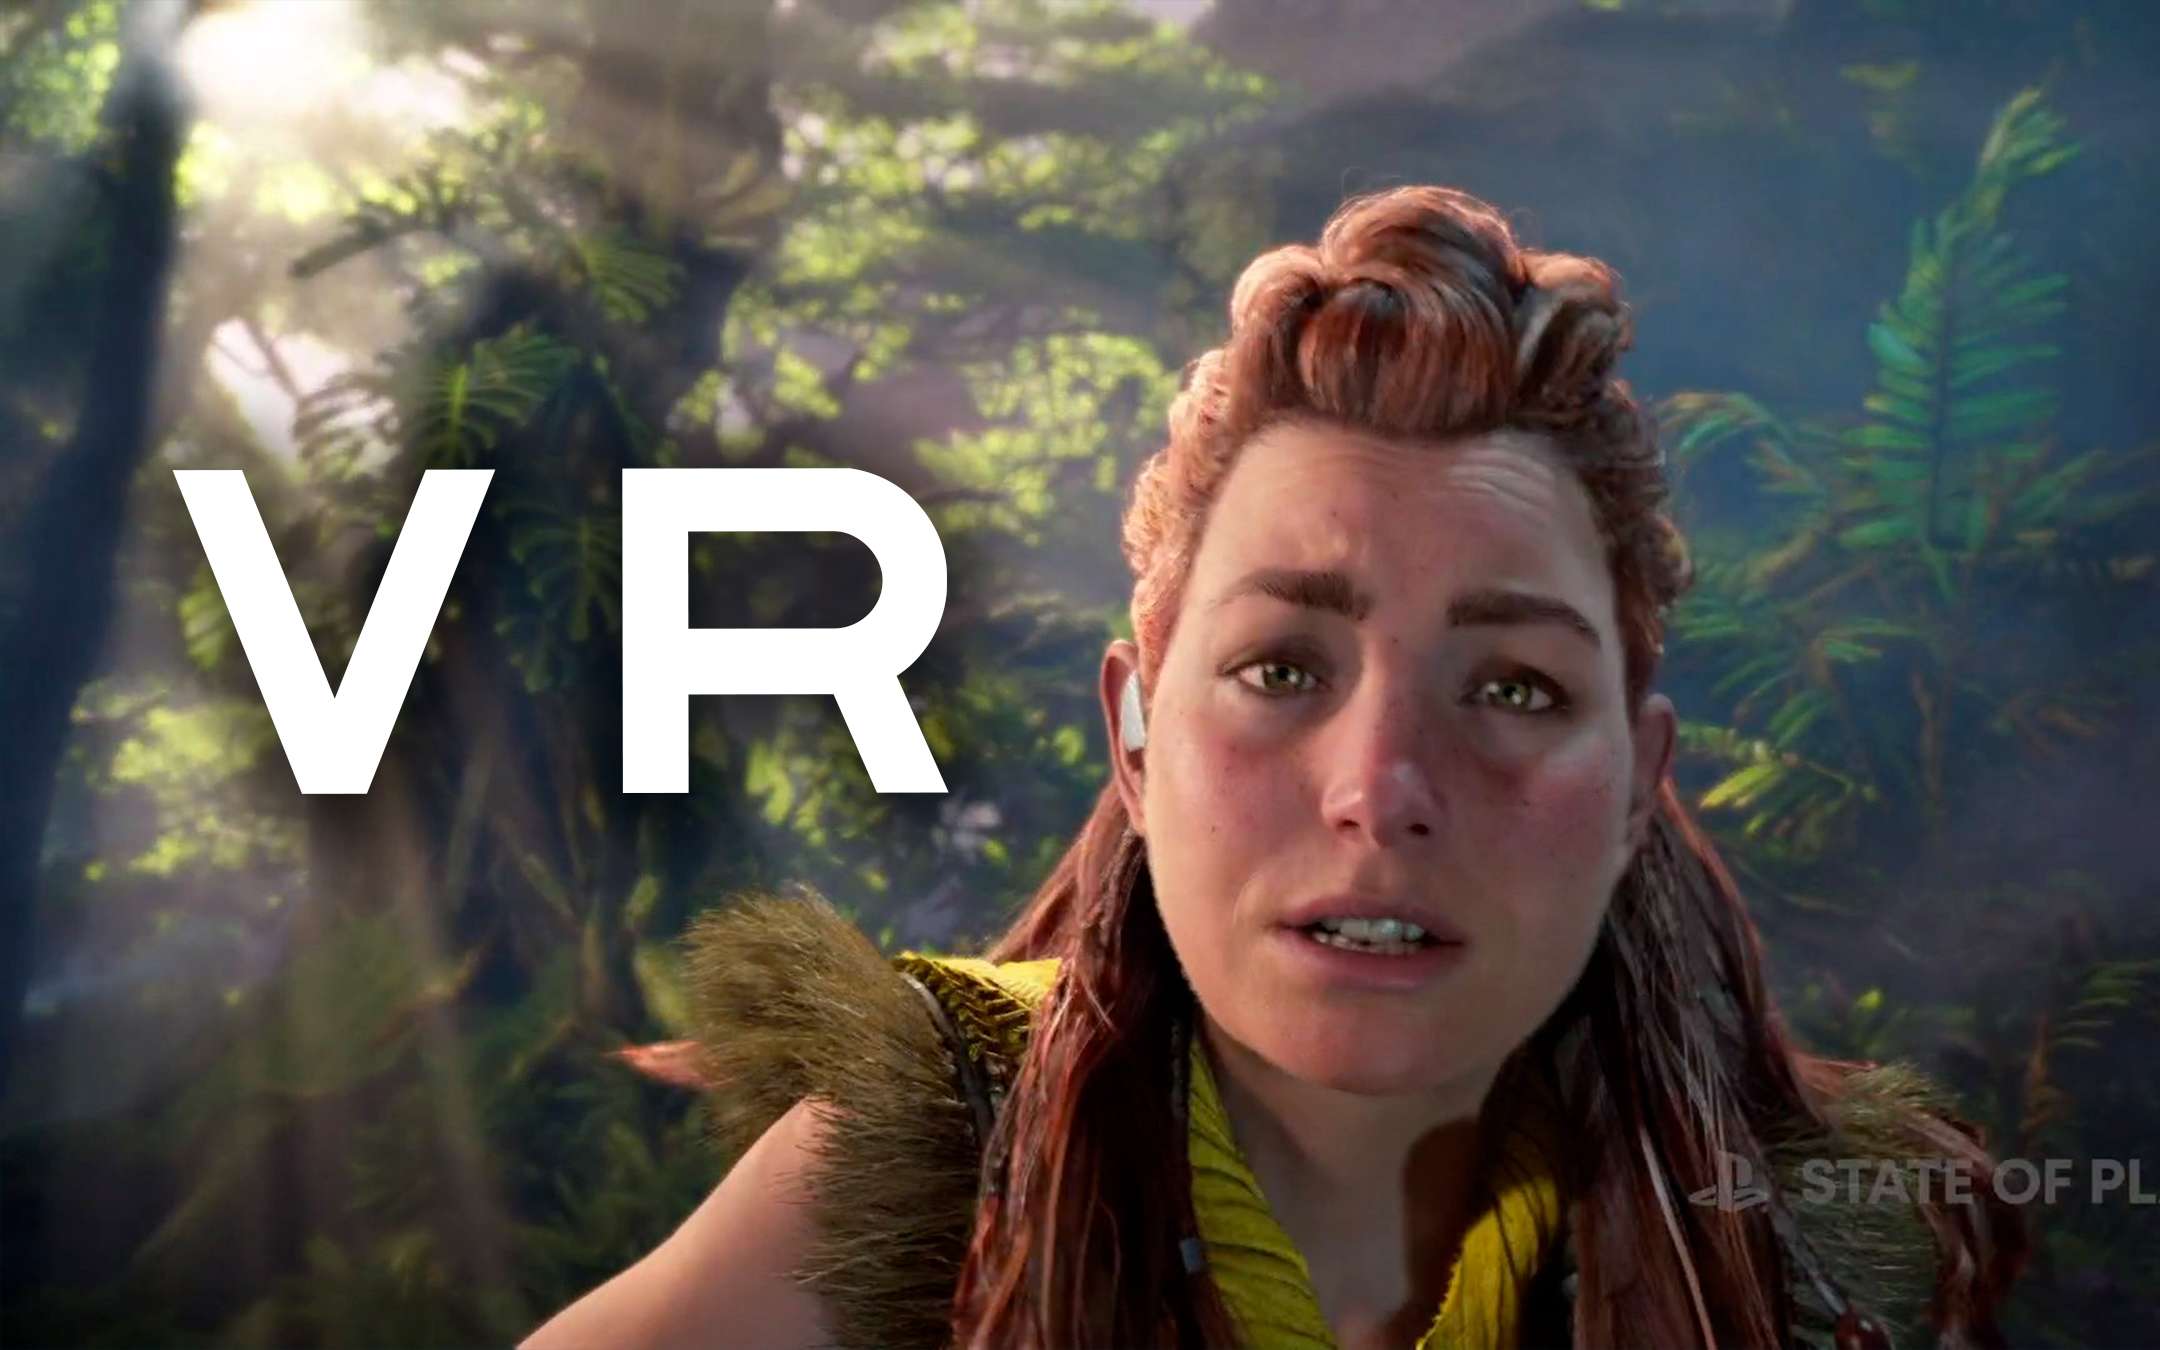 Horizon: Sony a lavoro su un gioco per PS VR 2 [RUMOR]